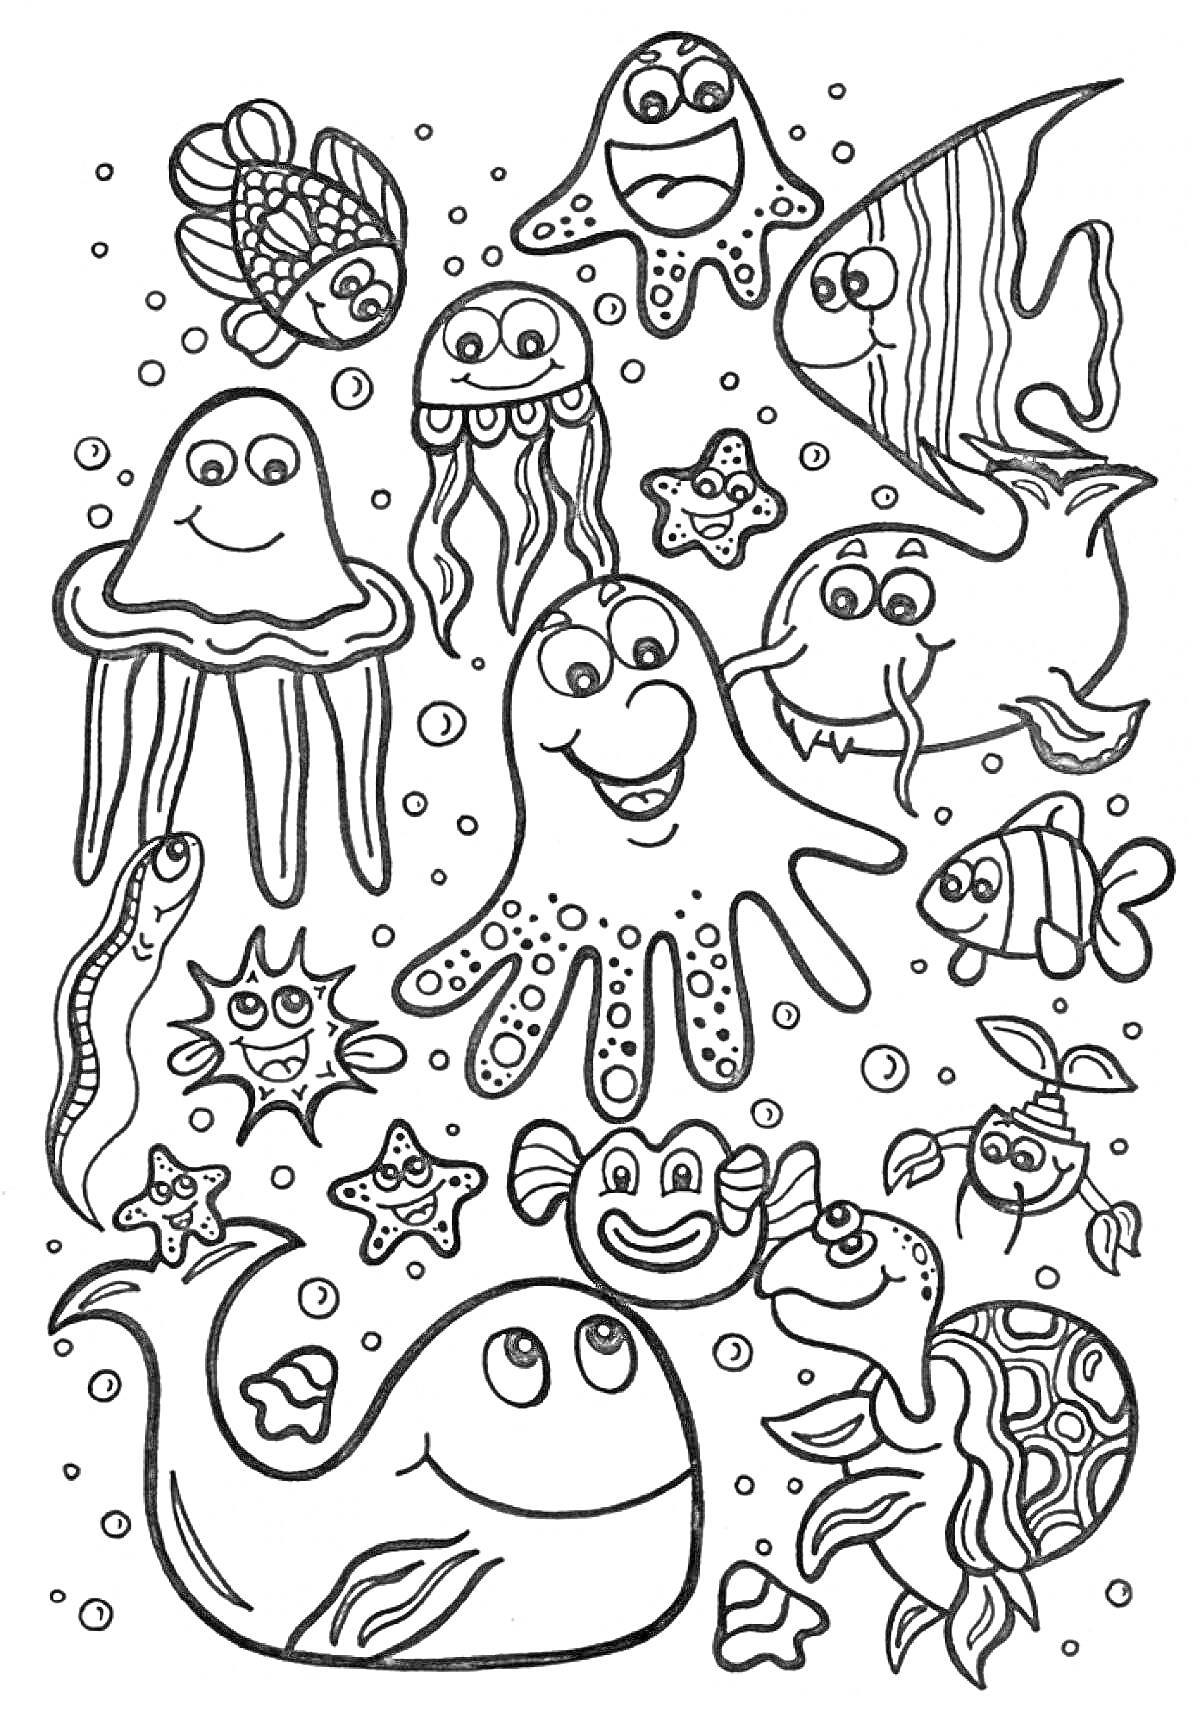 Раскраска Морские обитатели - осьминог, рыбы, медузы, морская звезда, скаты, черепаха, кит, краб, угорь